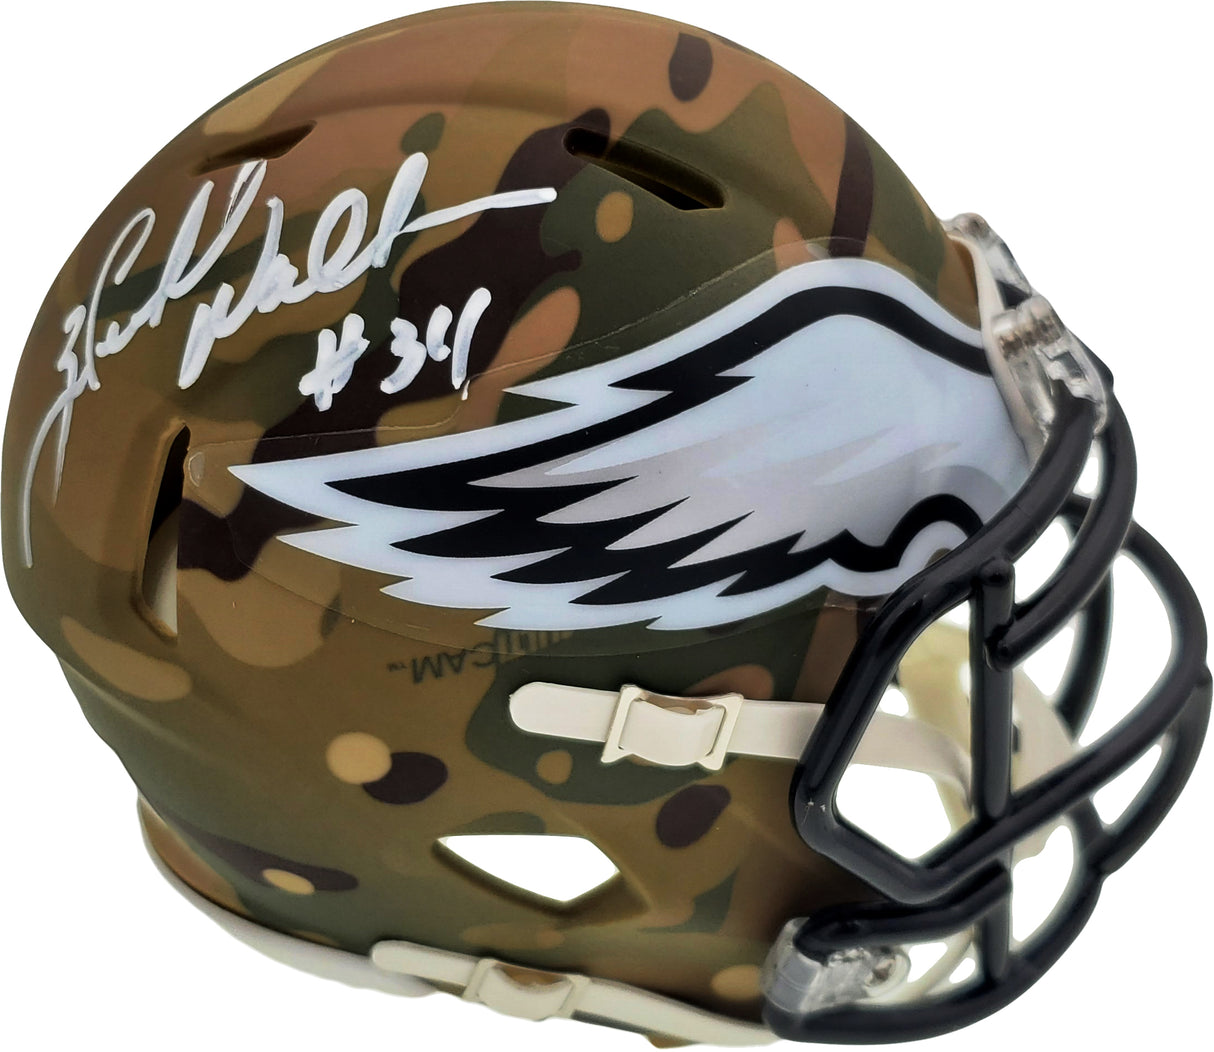 Herschel Walker Autographed Philadelphia Eagles Camo Speed Mini Helmet Beckett BAS Stock #185956